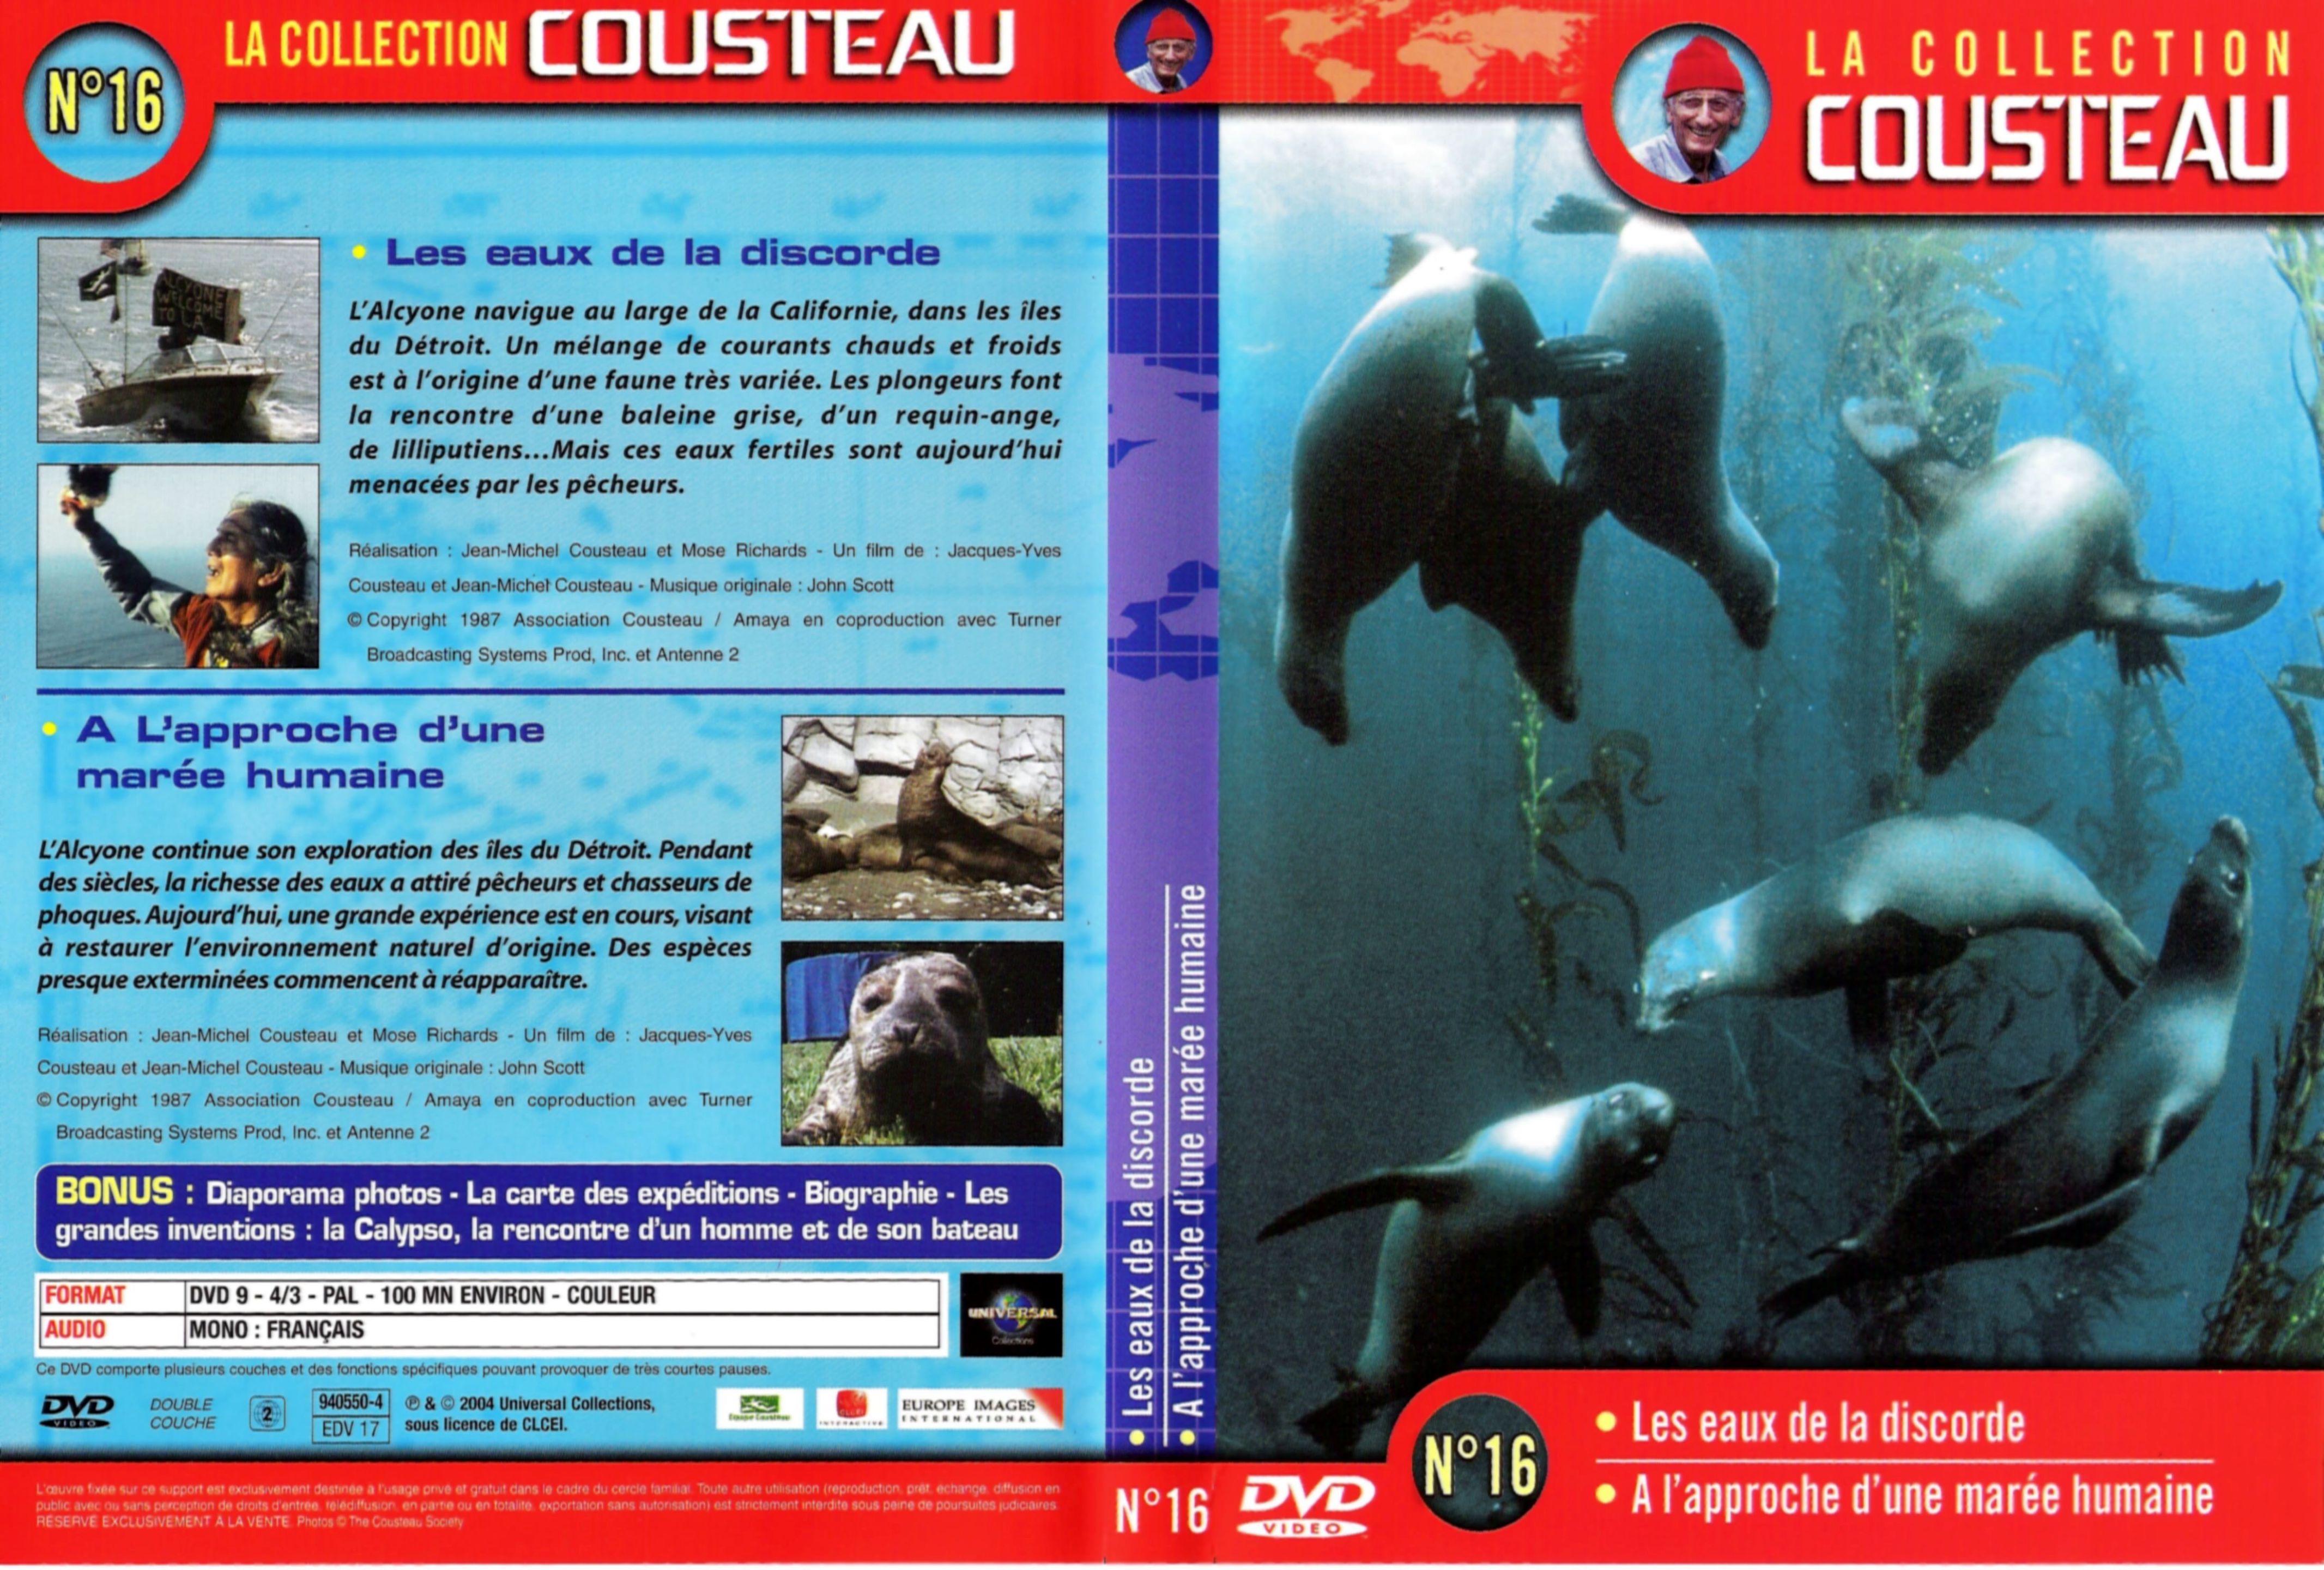 Jaquette DVD Cousteau Collection vol 16